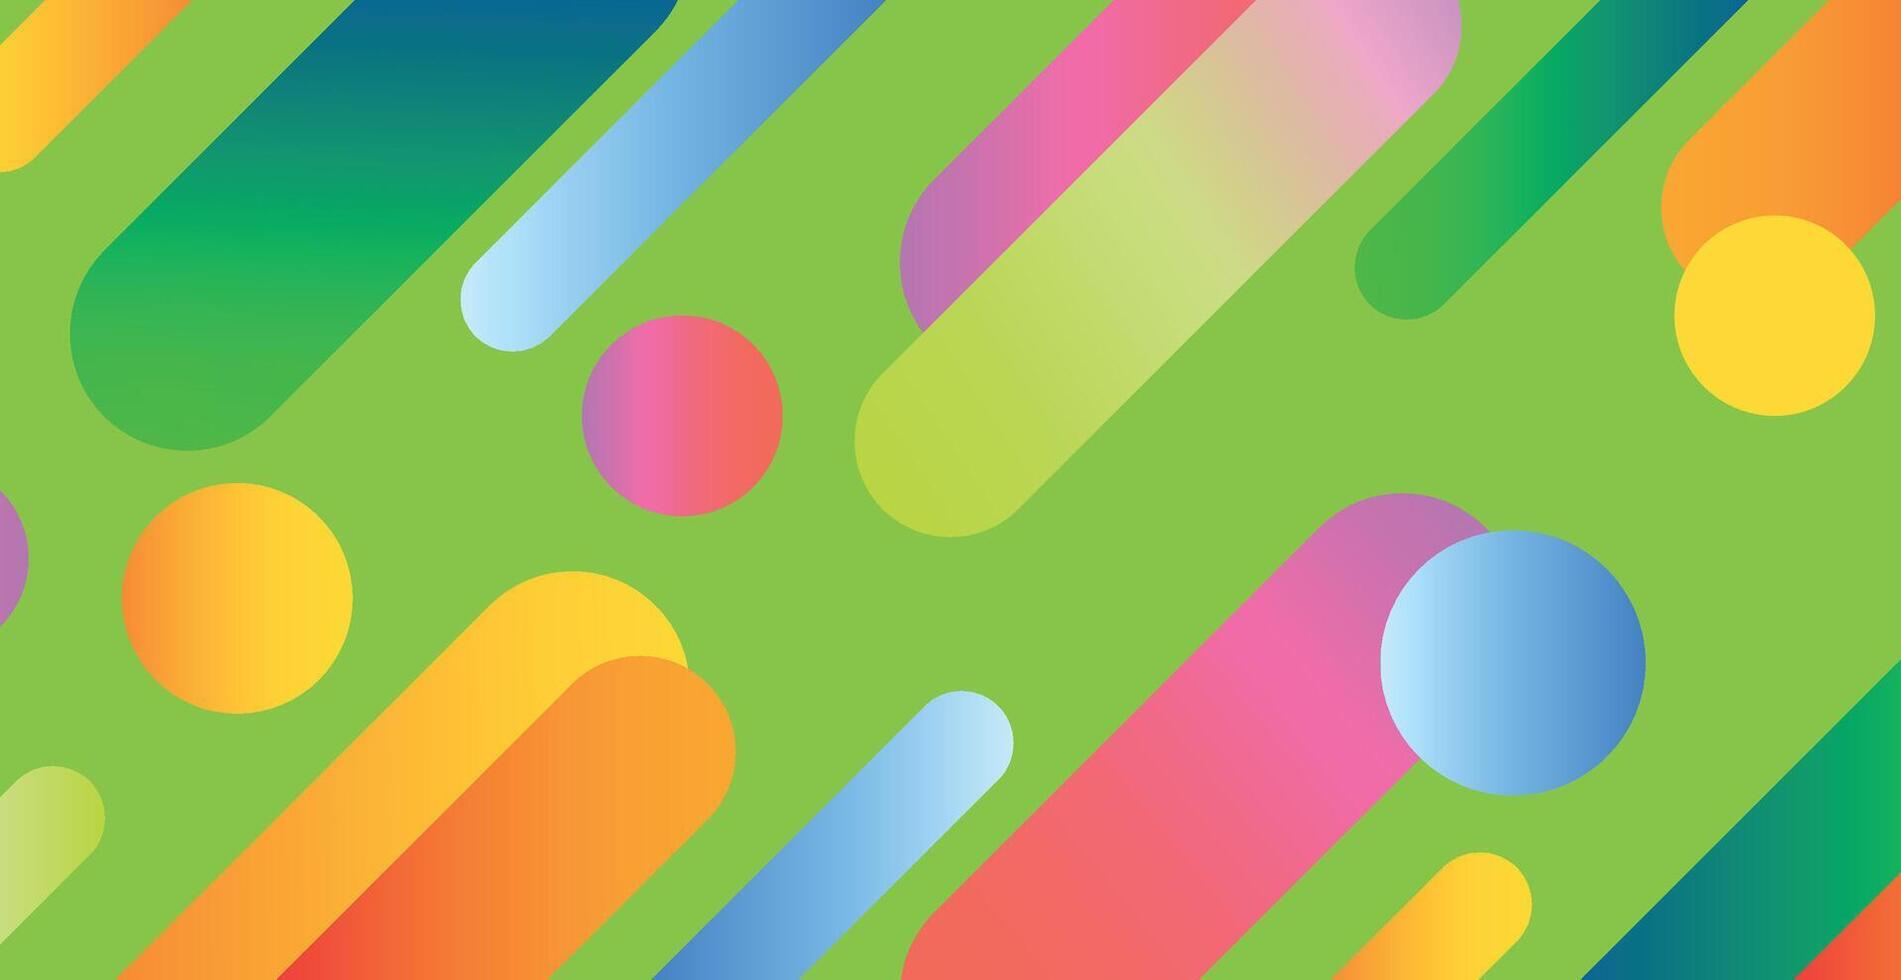 färgglada mångfärgade panoramautsikt abstrakt bakgrund från olika geometriska former - vektor